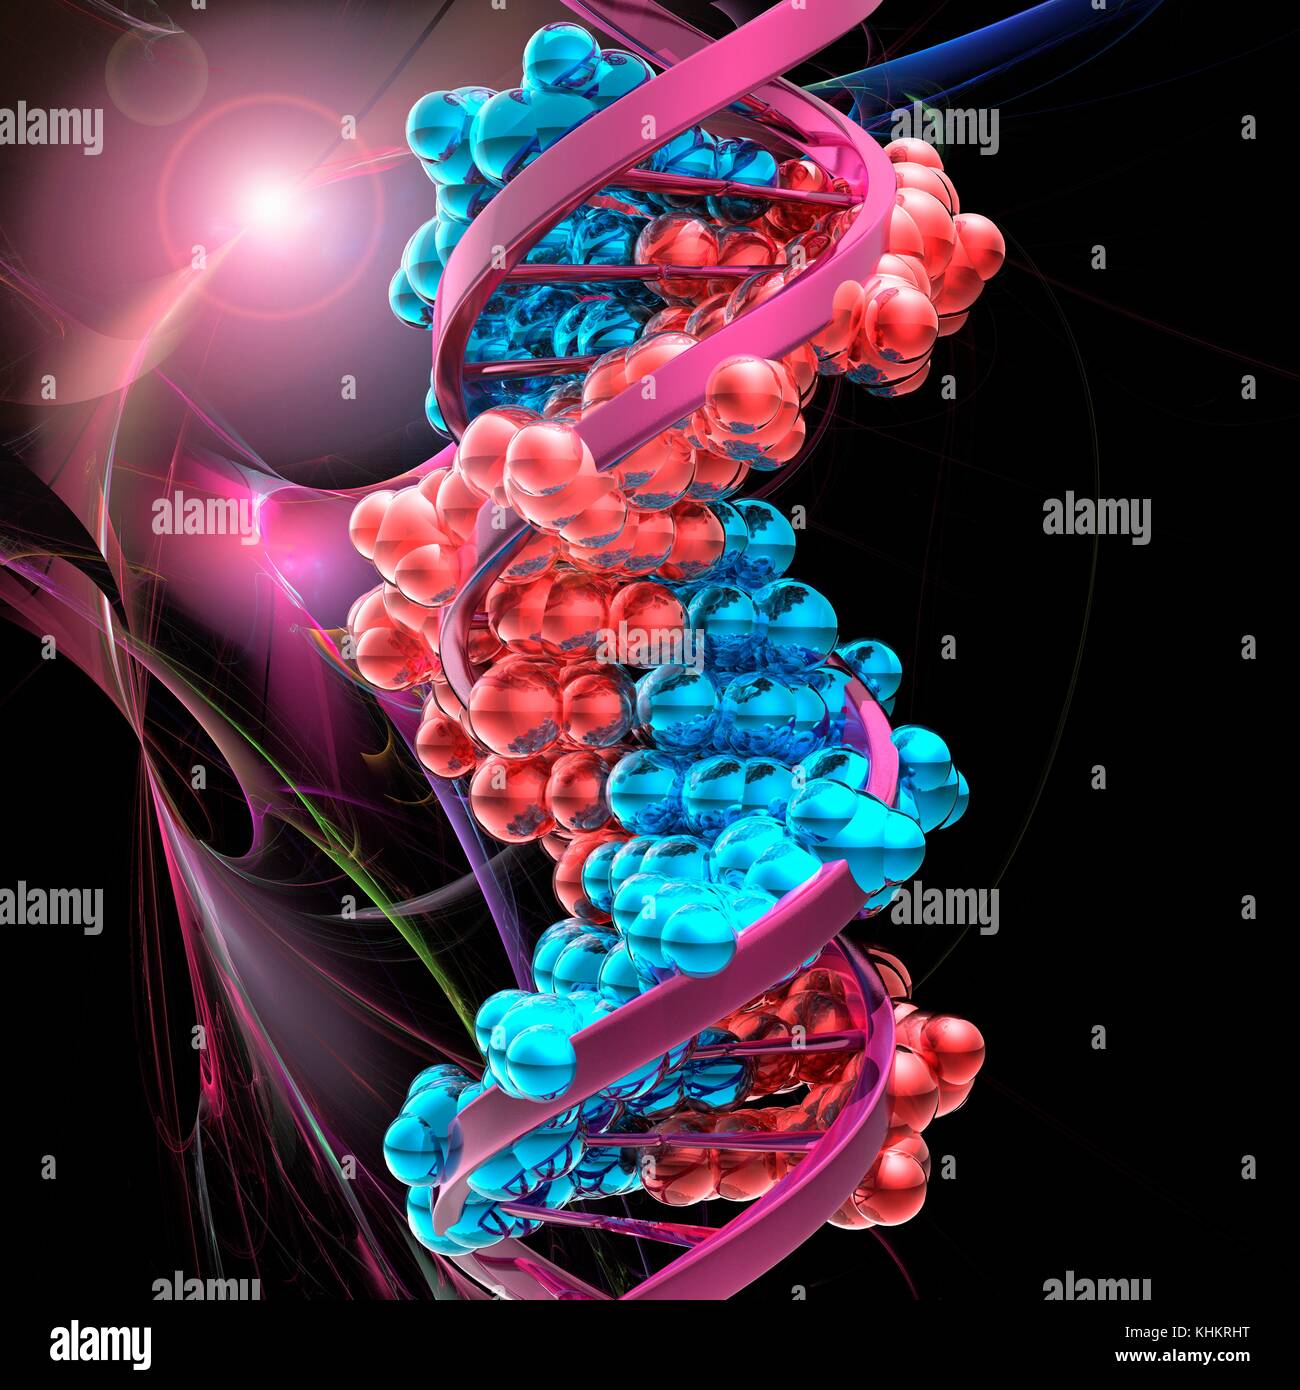 Illustrazione concettuale di un doppio filamento di DNA (acido desossiribonucleico) molecola. Il DNA è composto da due trefoli intrecciati in una doppia elica. Ciascun filamento è costituito da uno zucchero-ossatura di fosfato attaccata alle basi nucleotidiche. Ci sono quattro basi: adenina, citosina, guanina e timina. Le basi sono uniti tra di loro da legami idrogeno. Il DNA contiene sezioni chiamati geni che codificano il corpo di informazioni genetiche. Foto Stock